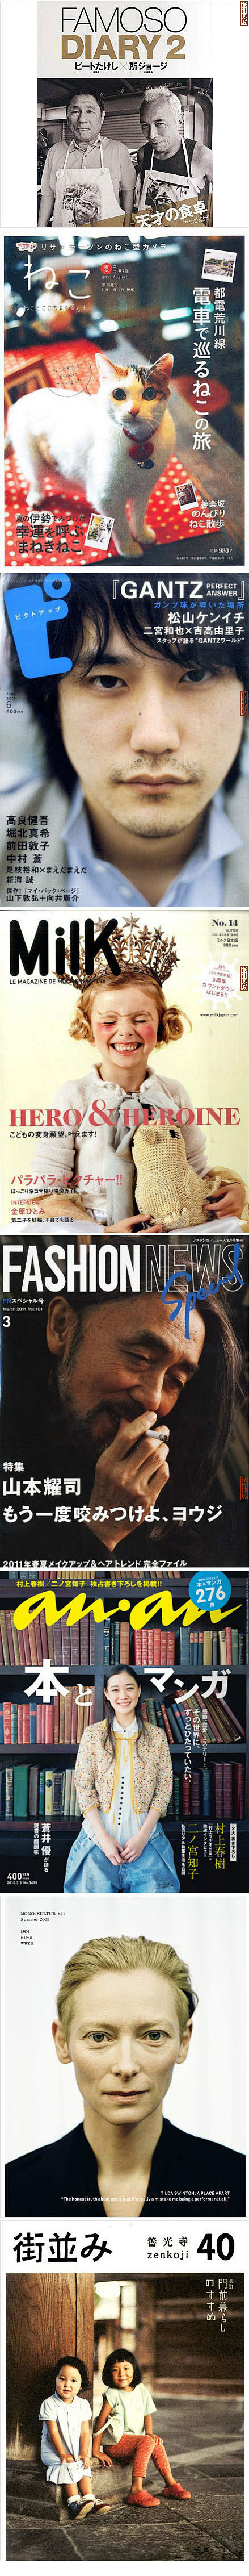 分享一组日系杂志封面设计